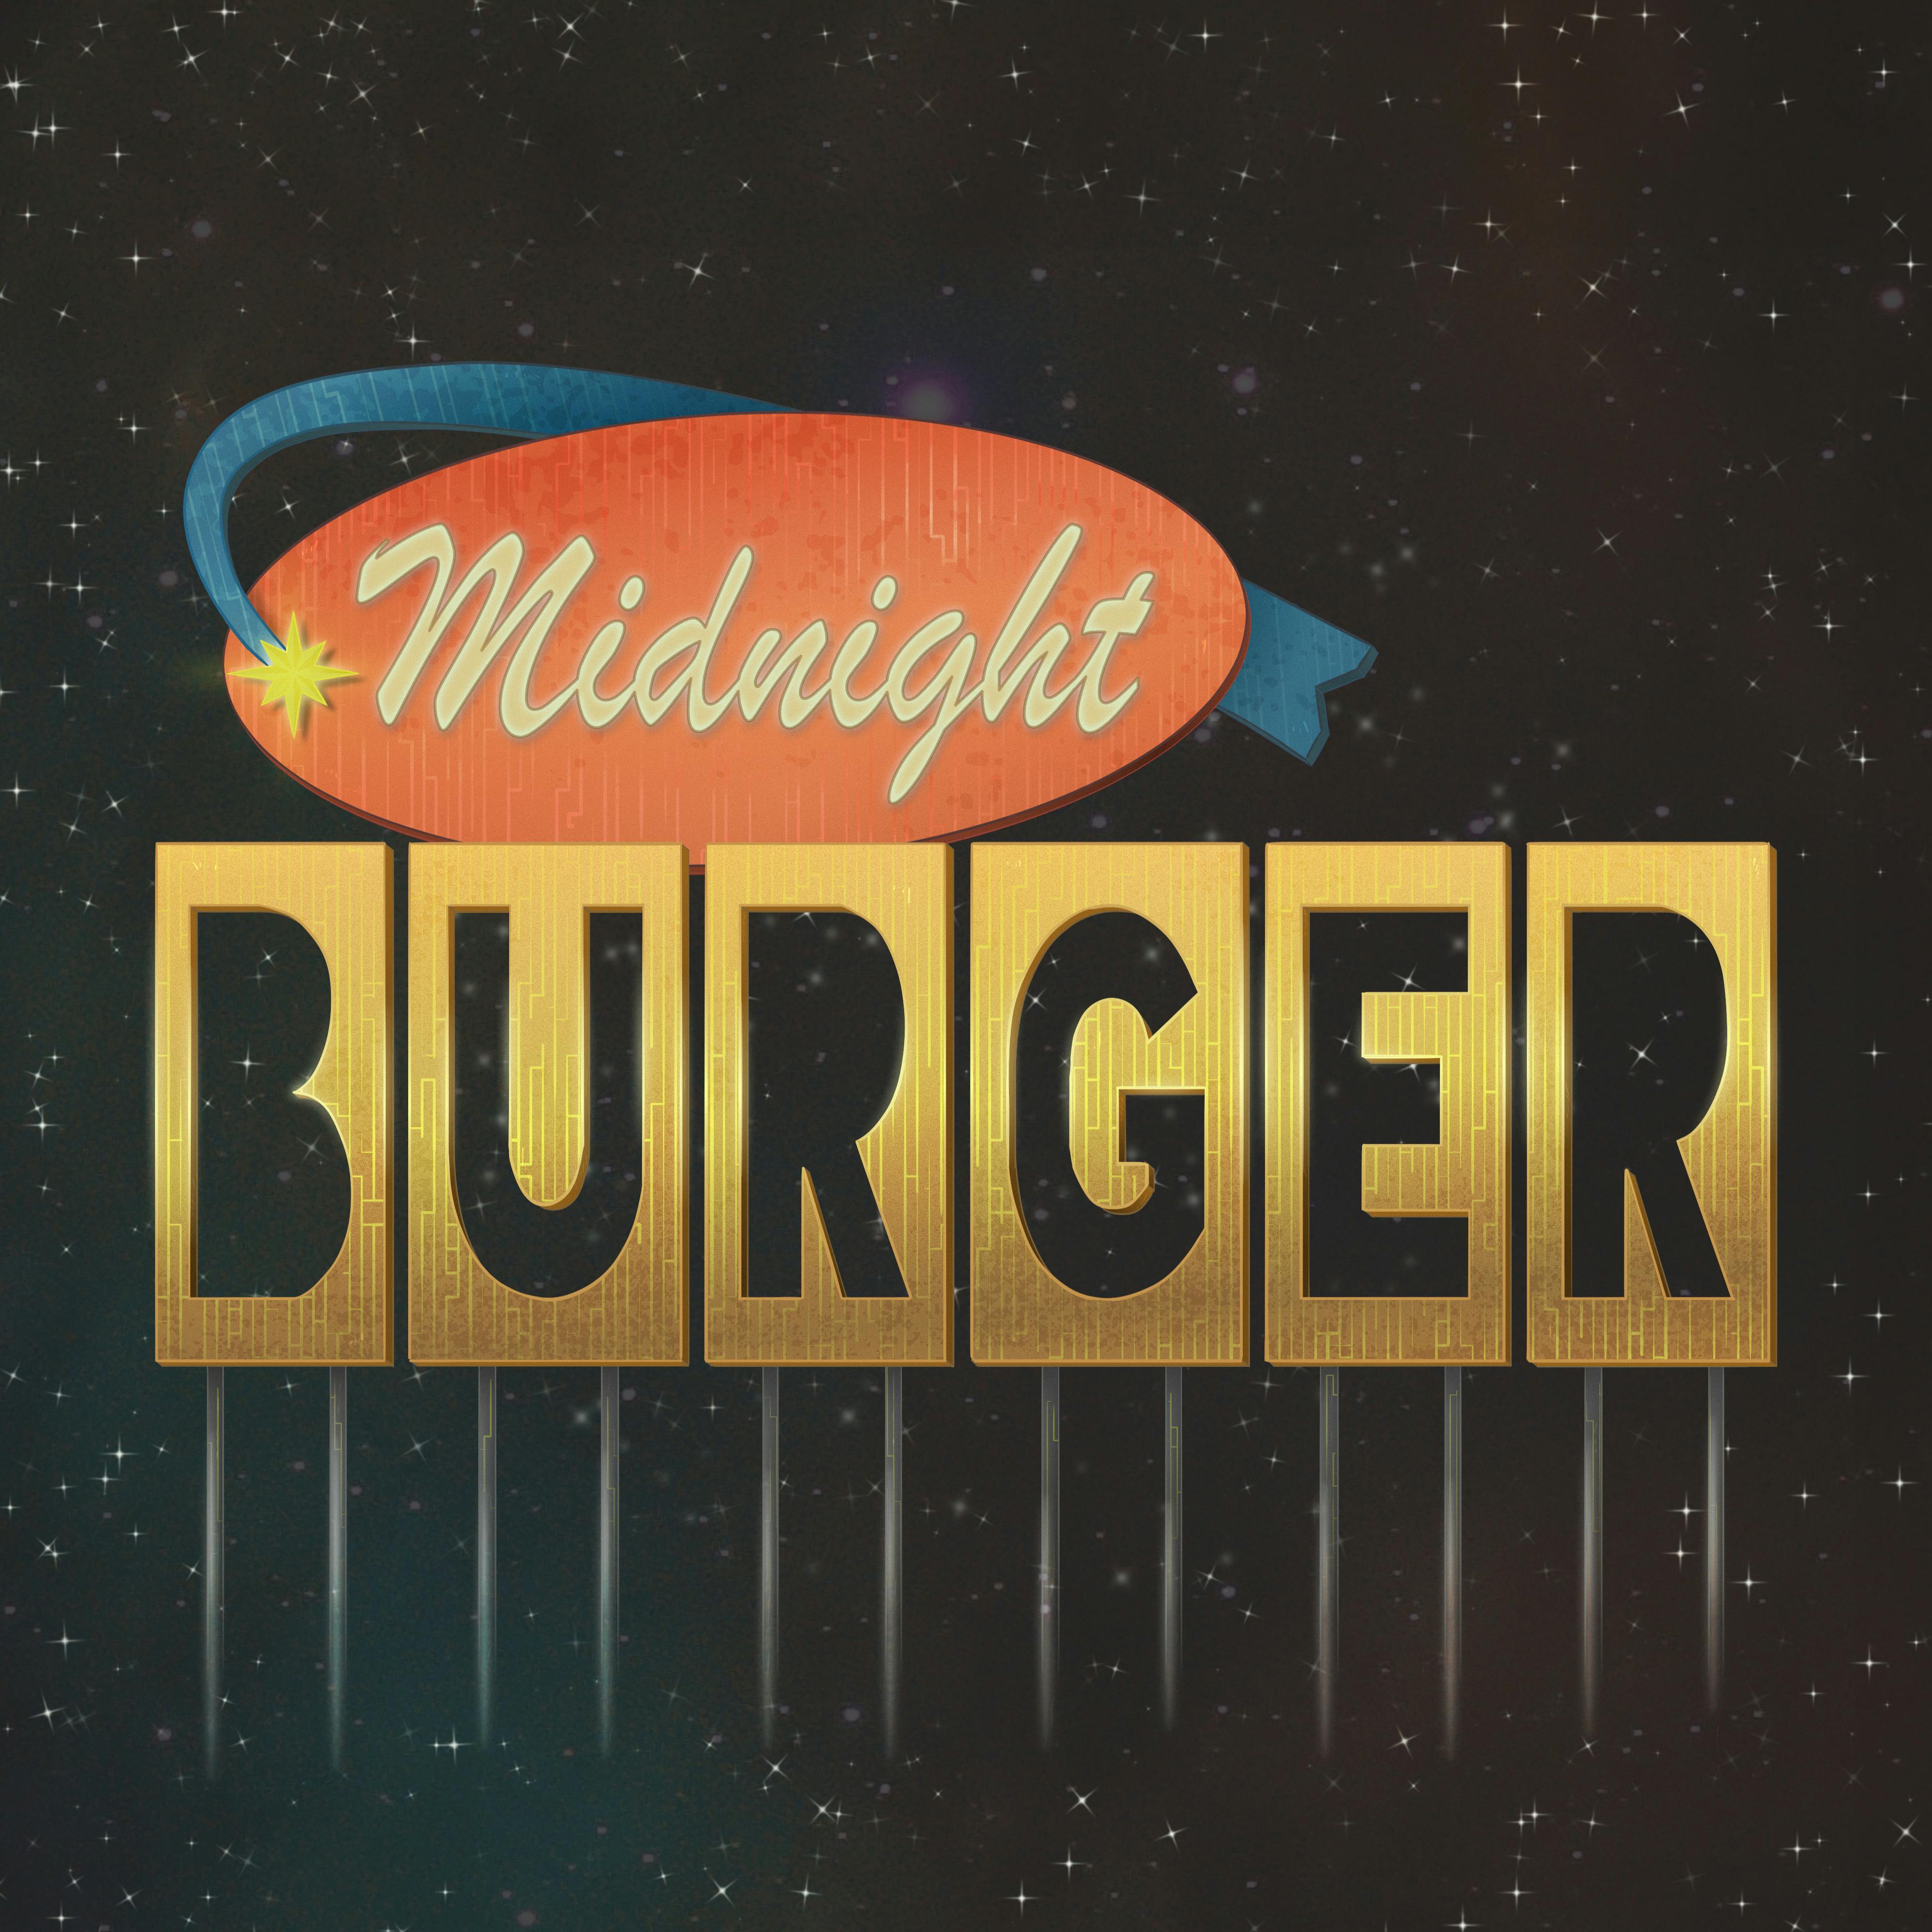 Podfriends: Midnight Burger